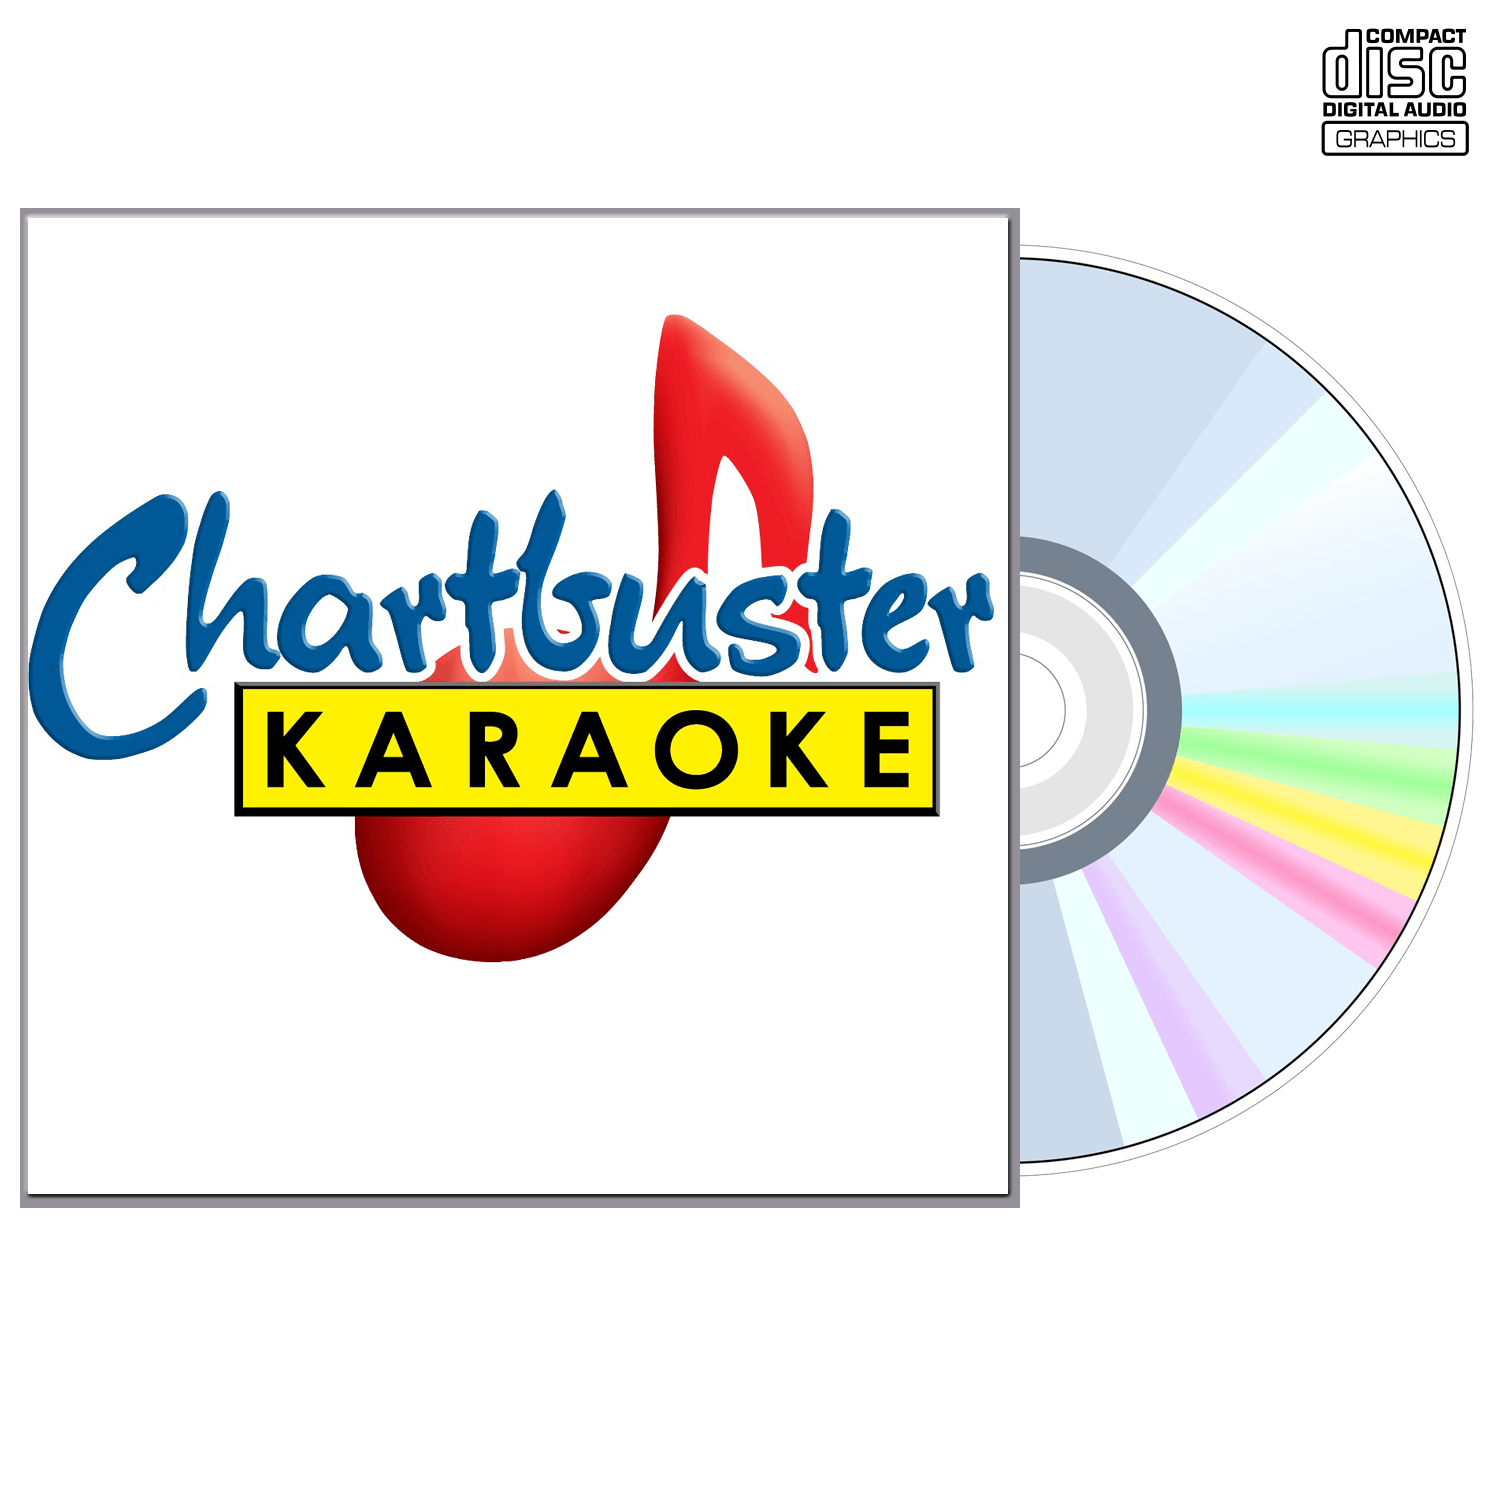 Paul Mccartney - CD+G - Chartbuster Karaoke - Karaoke Home Entertainment